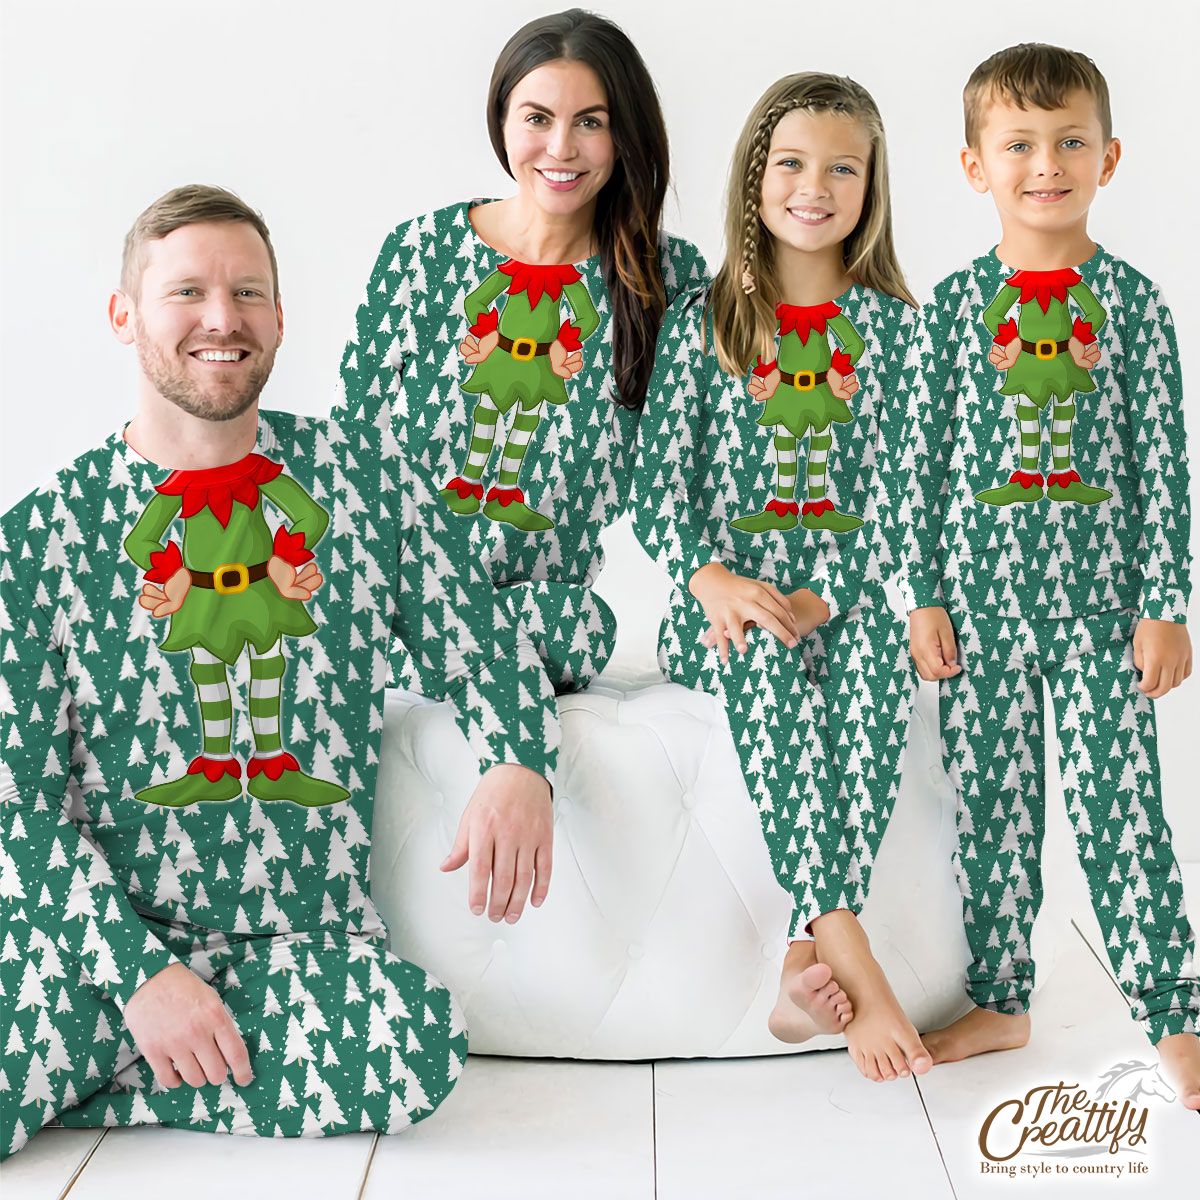 Green And White Christmas Tree Customized Pajamas